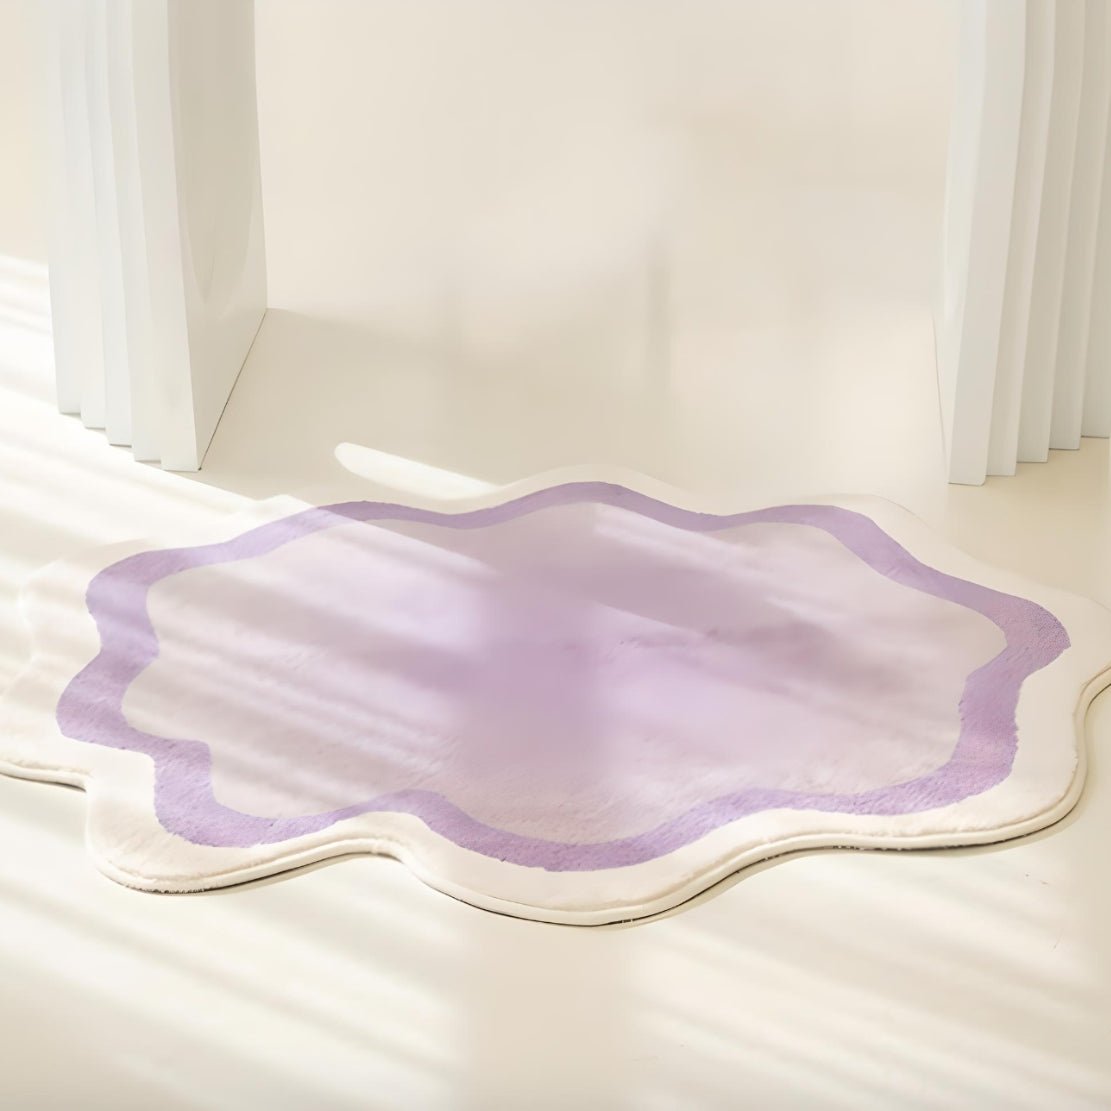 Purple, asymmetrical gradient floor rug